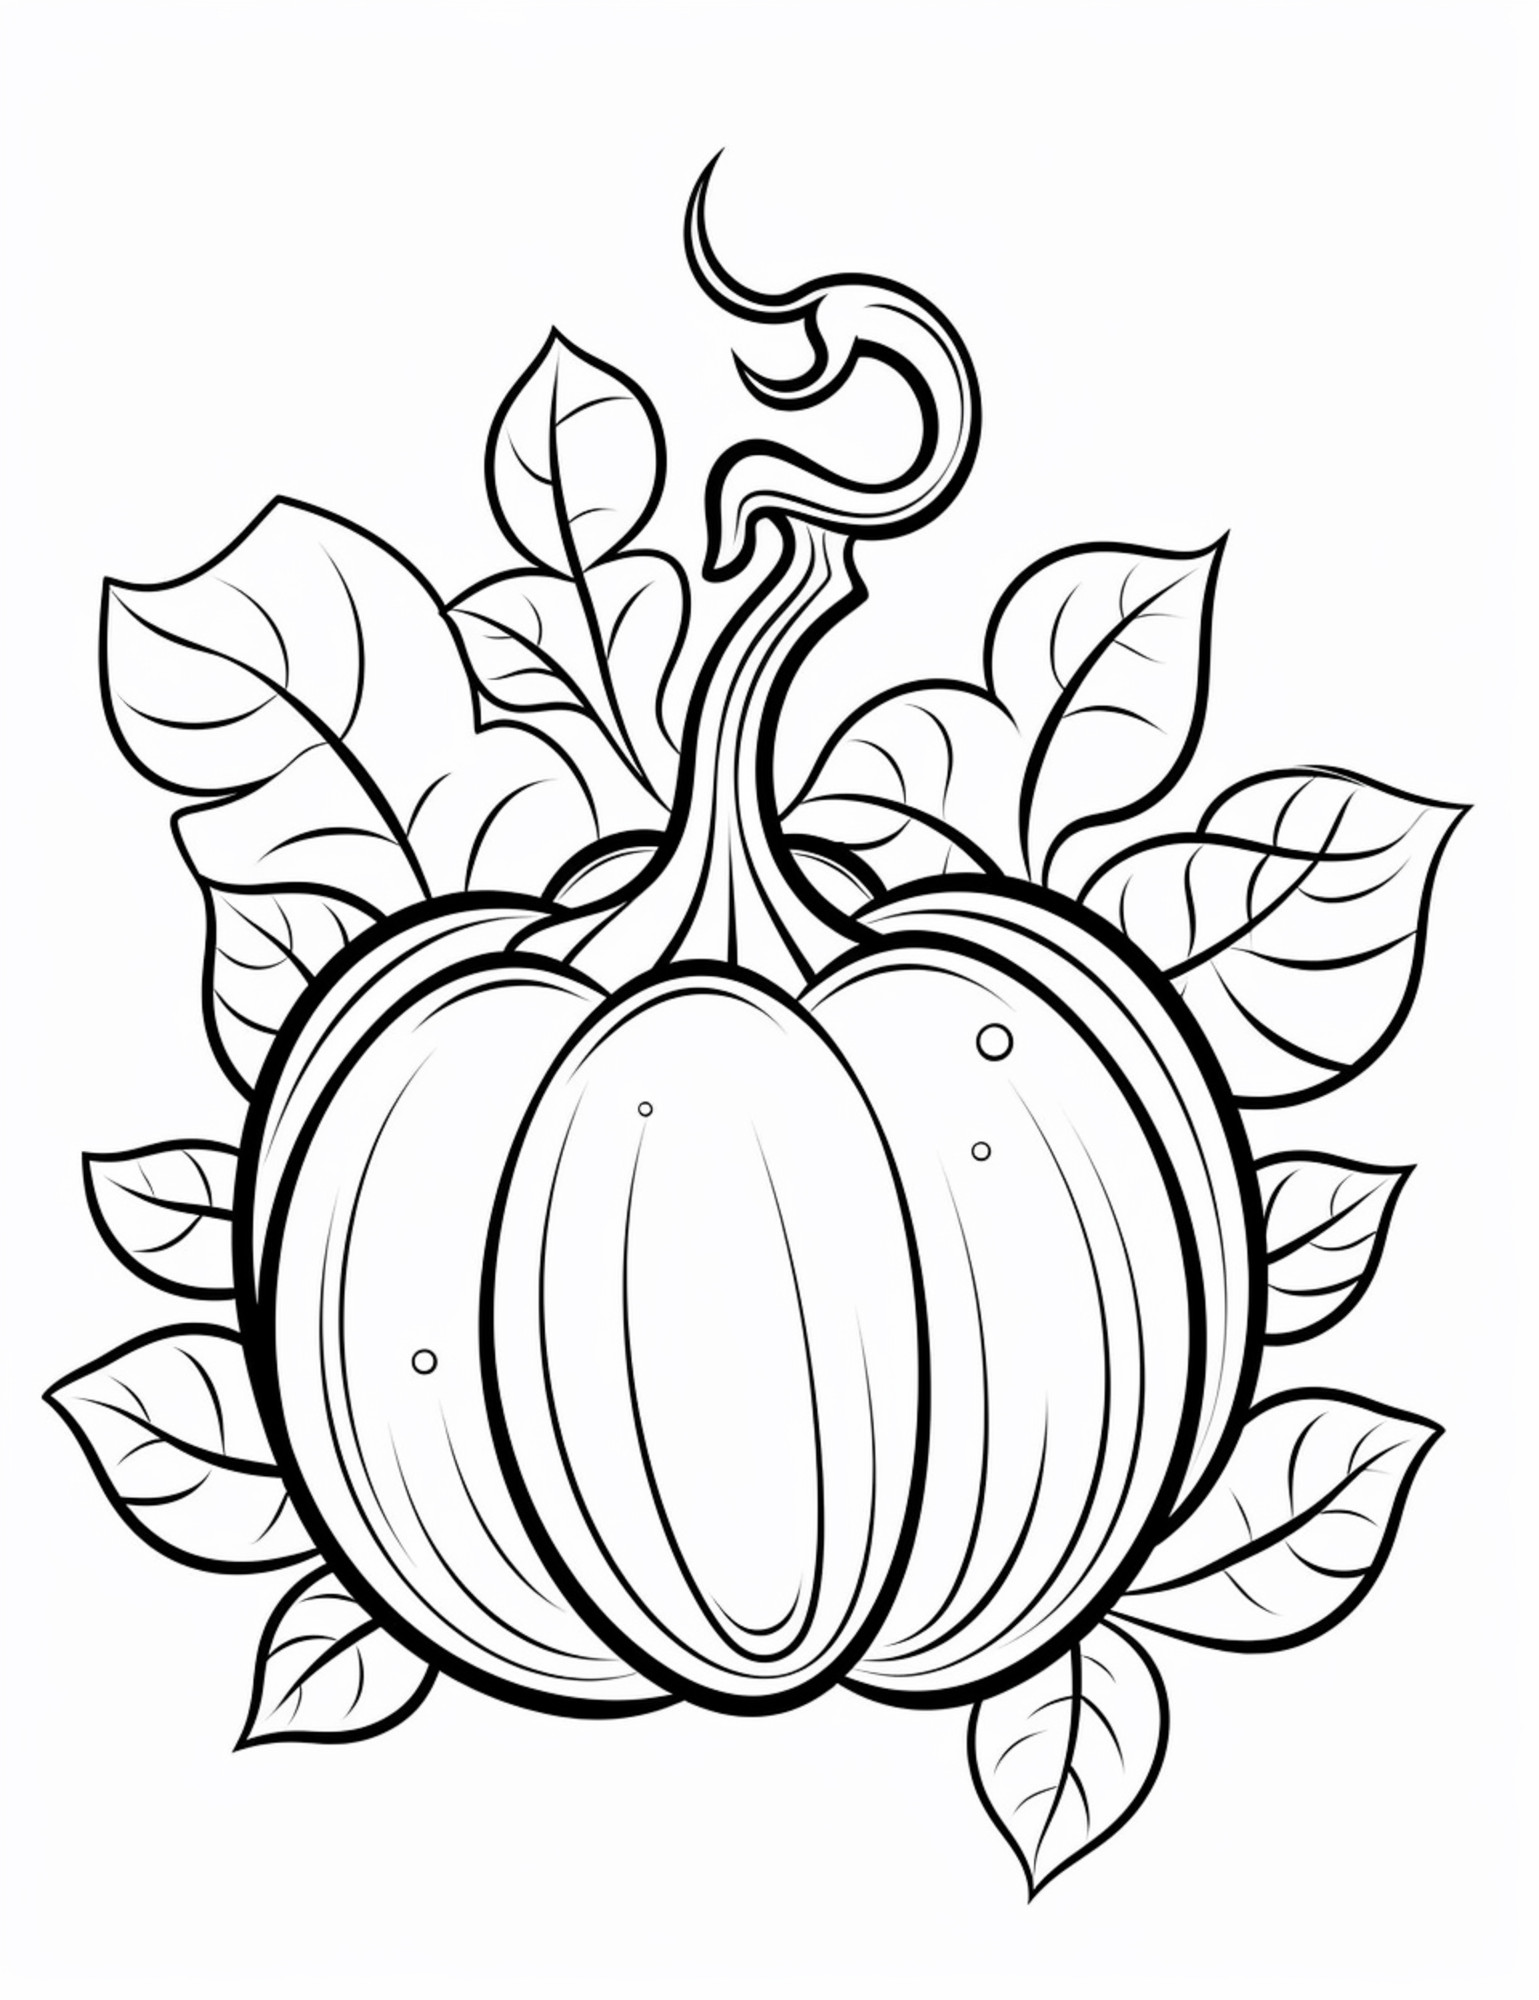 Раскраска для детей: хэллоуинская тыква с листьями и хвостом